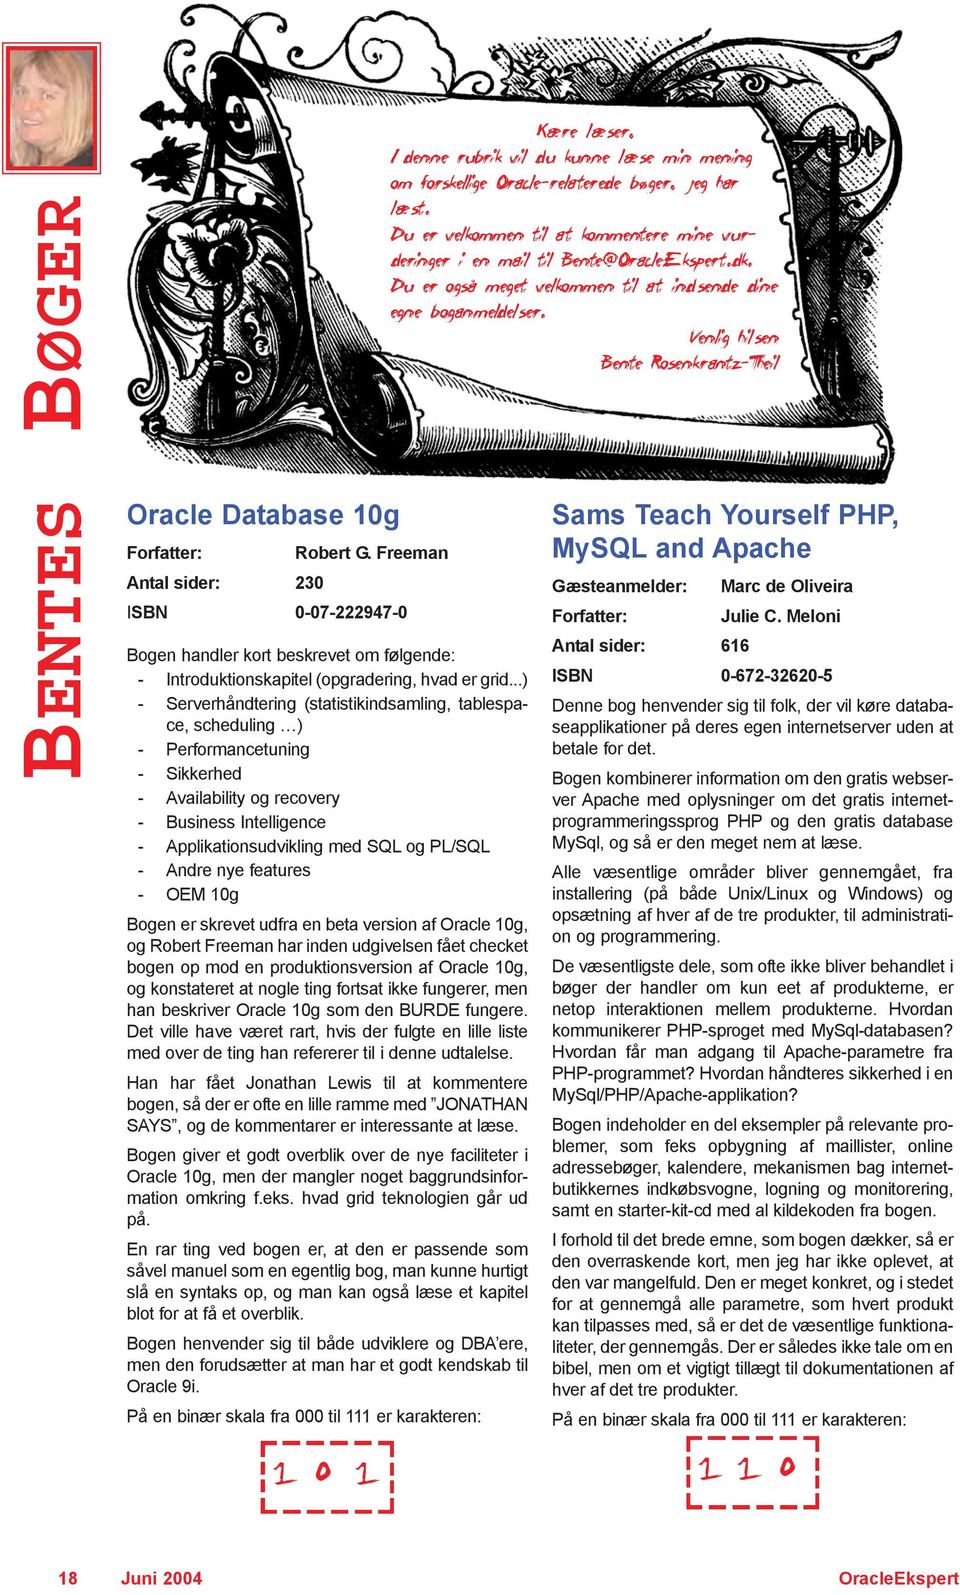 Andre nye features - OEM 10g Bogen er skrevet udfra en beta version af Oracle 10g, og Robert Freeman har inden udgivelsen fået checket bogen op mod en produktionsversion af Oracle 10g, og konstateret